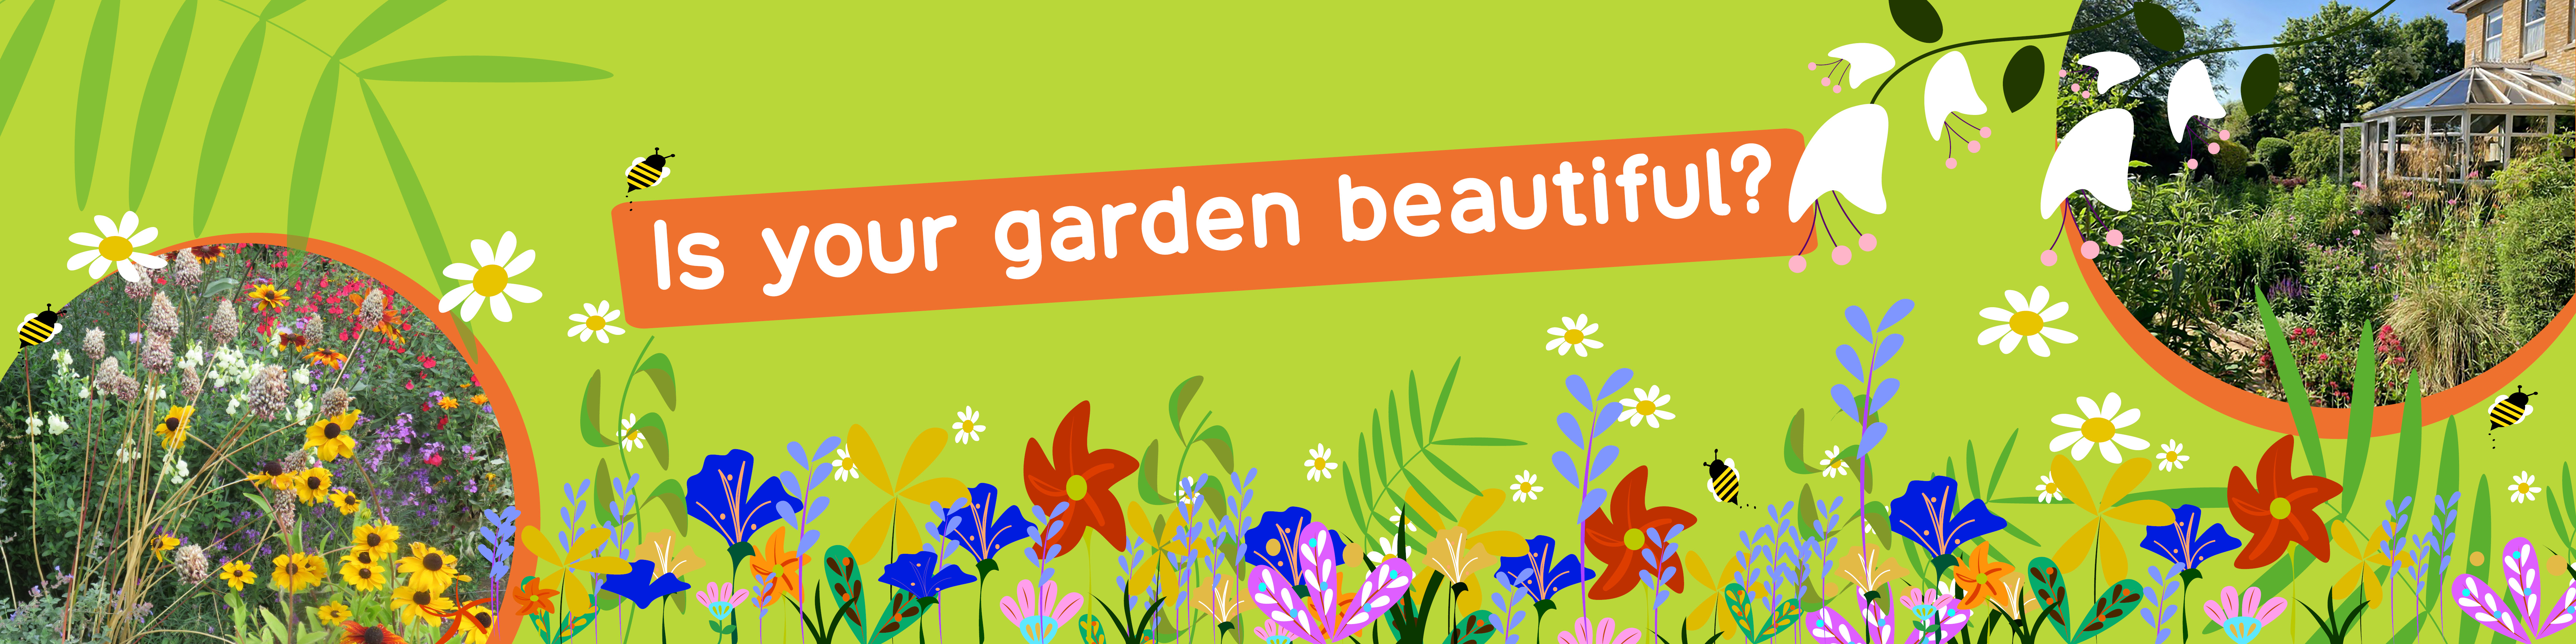 Is your garden beautiful?